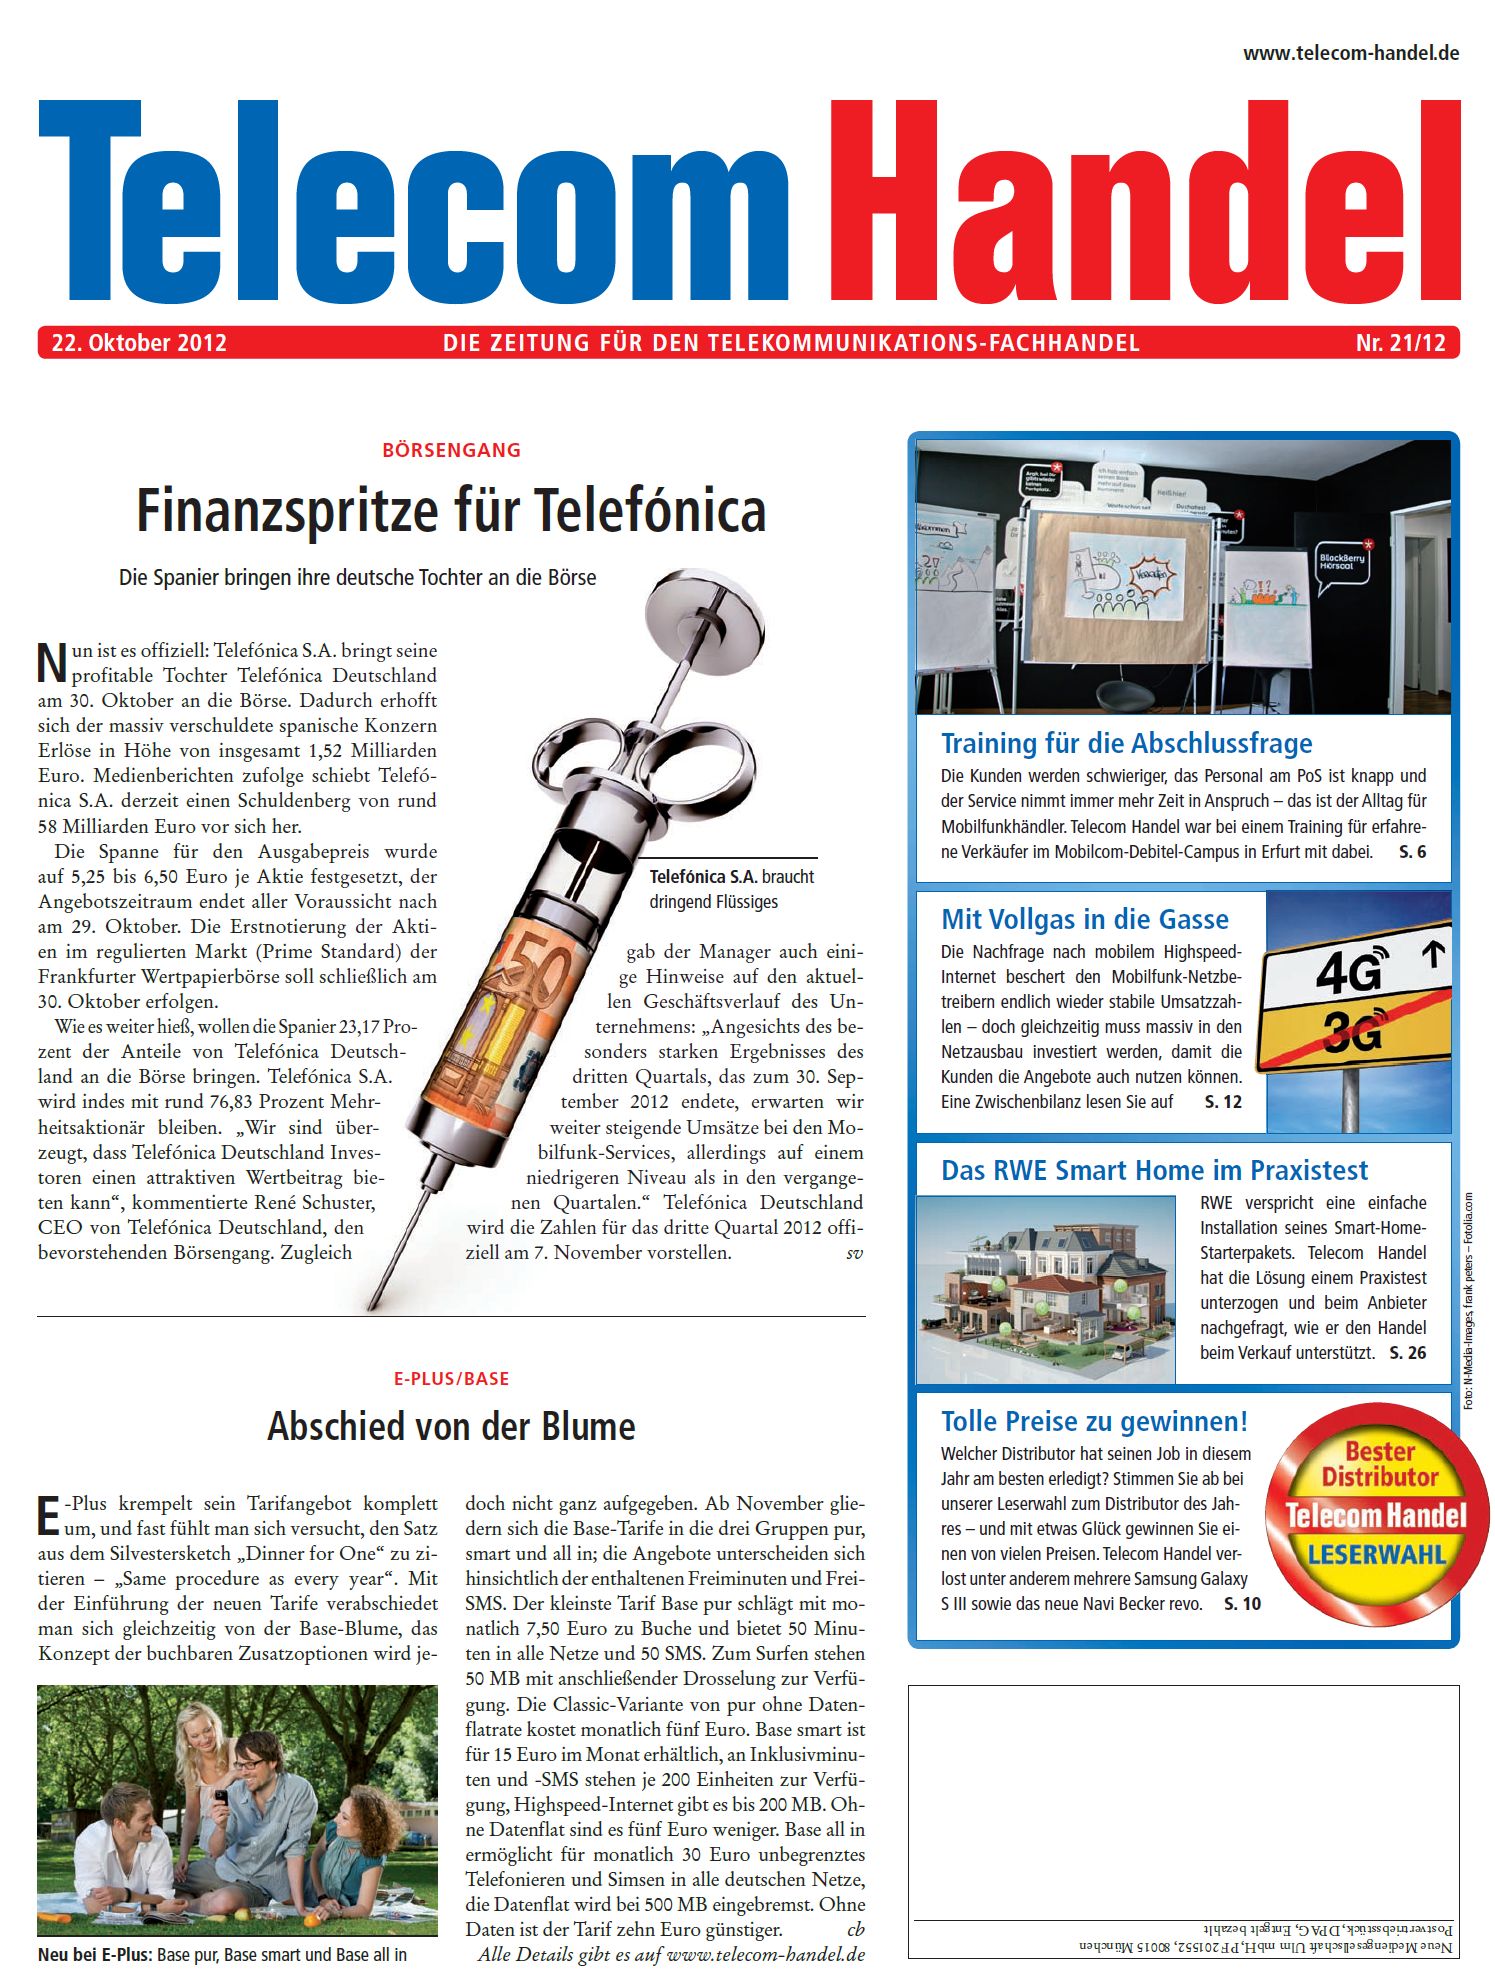 Telecom Handel Ausgabe 21/2012